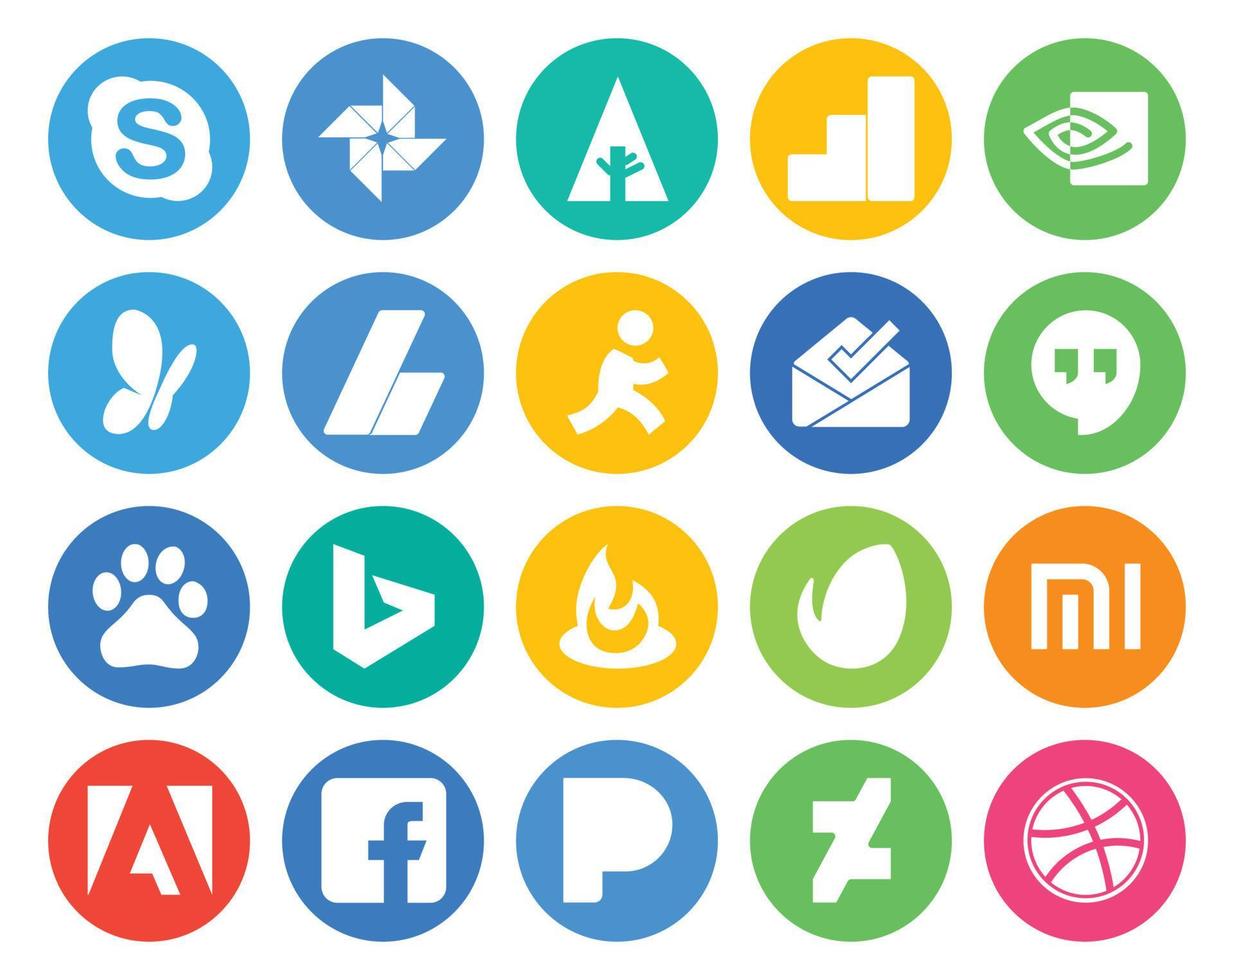 paquete de 20 íconos de redes sociales que incluye anuncios de adobe envato feedburner baidu vector